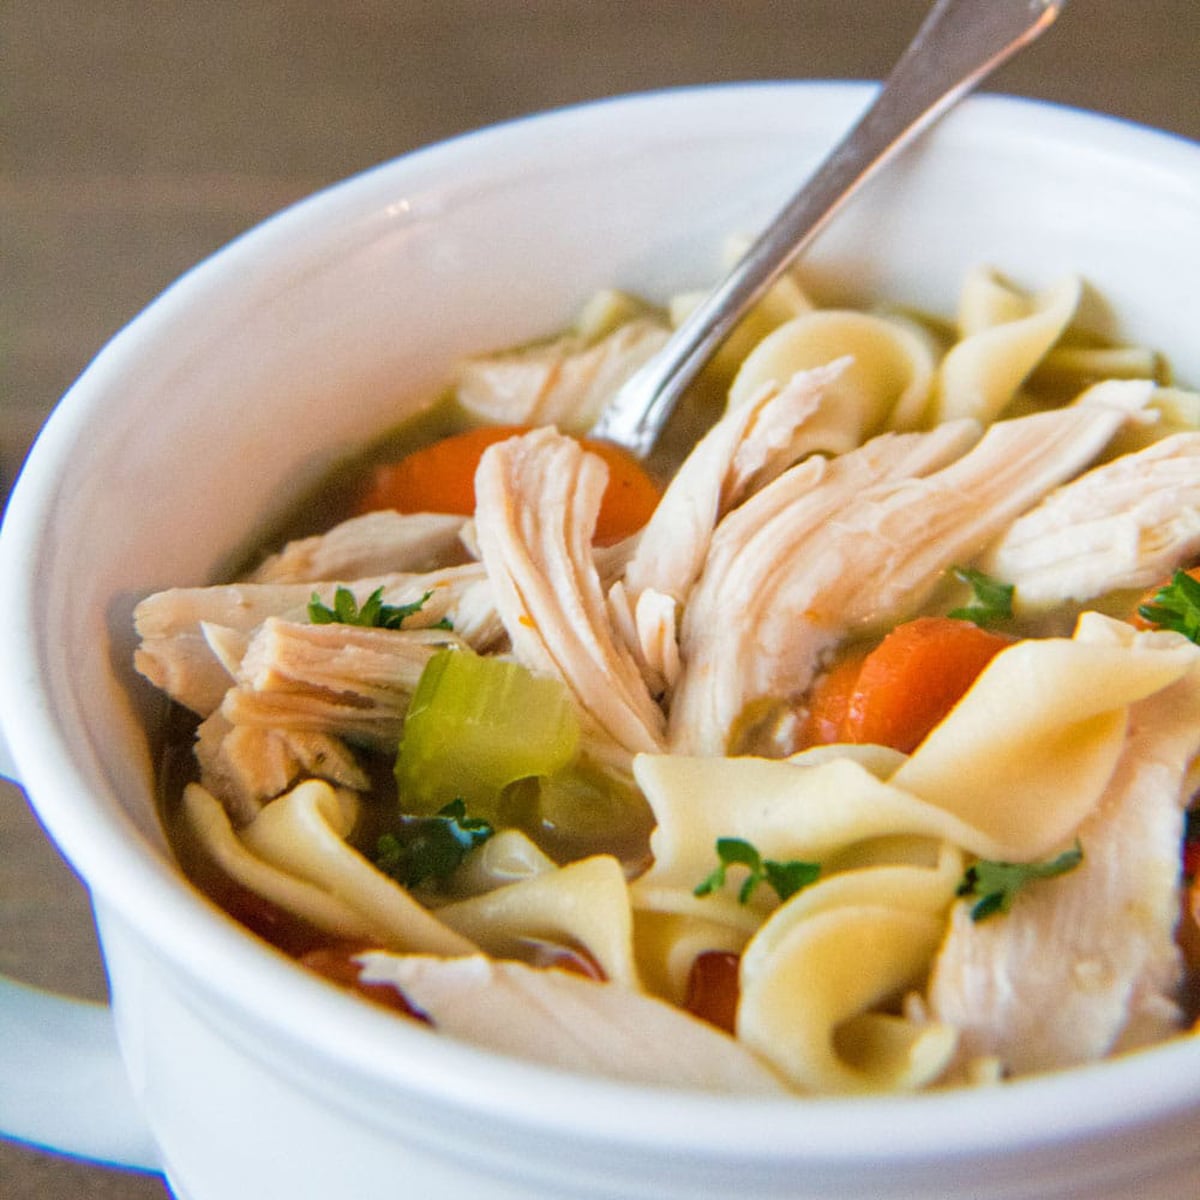 Квадратное изображение куриного супа с лапшой в белой миске.